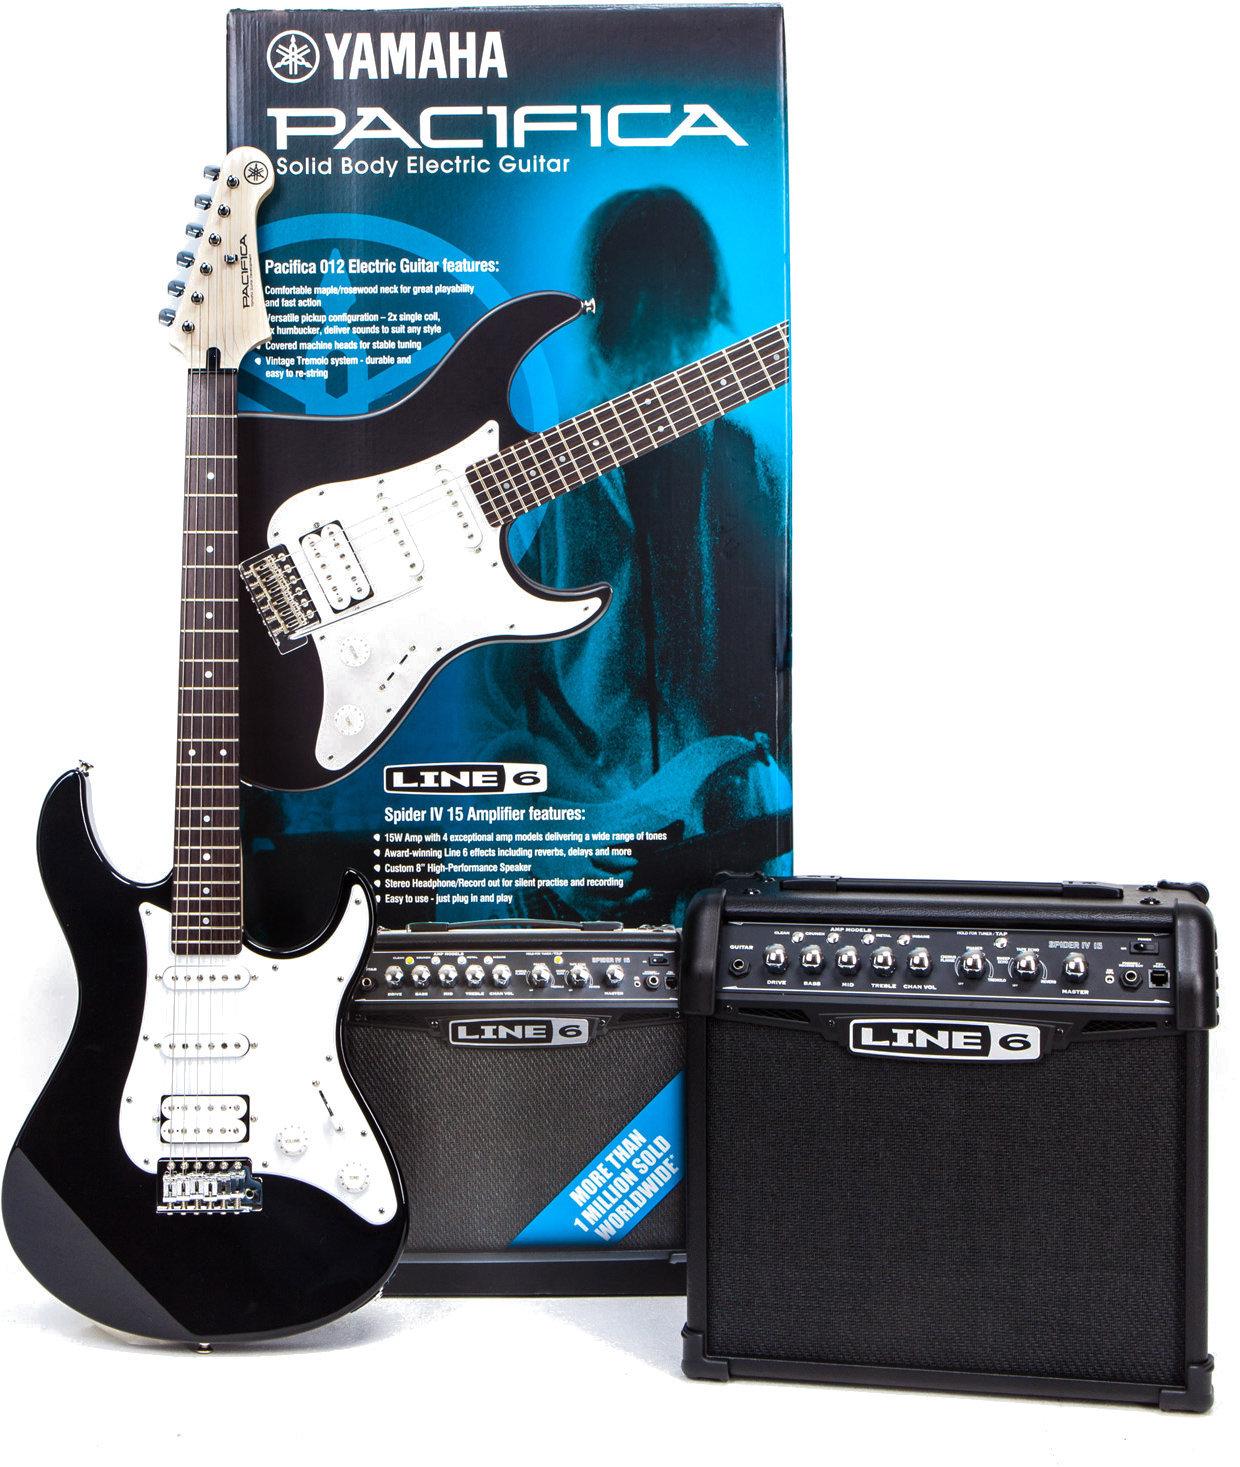 Guitarra eléctrica Yamaha Pacifica 012 & Spider V 20